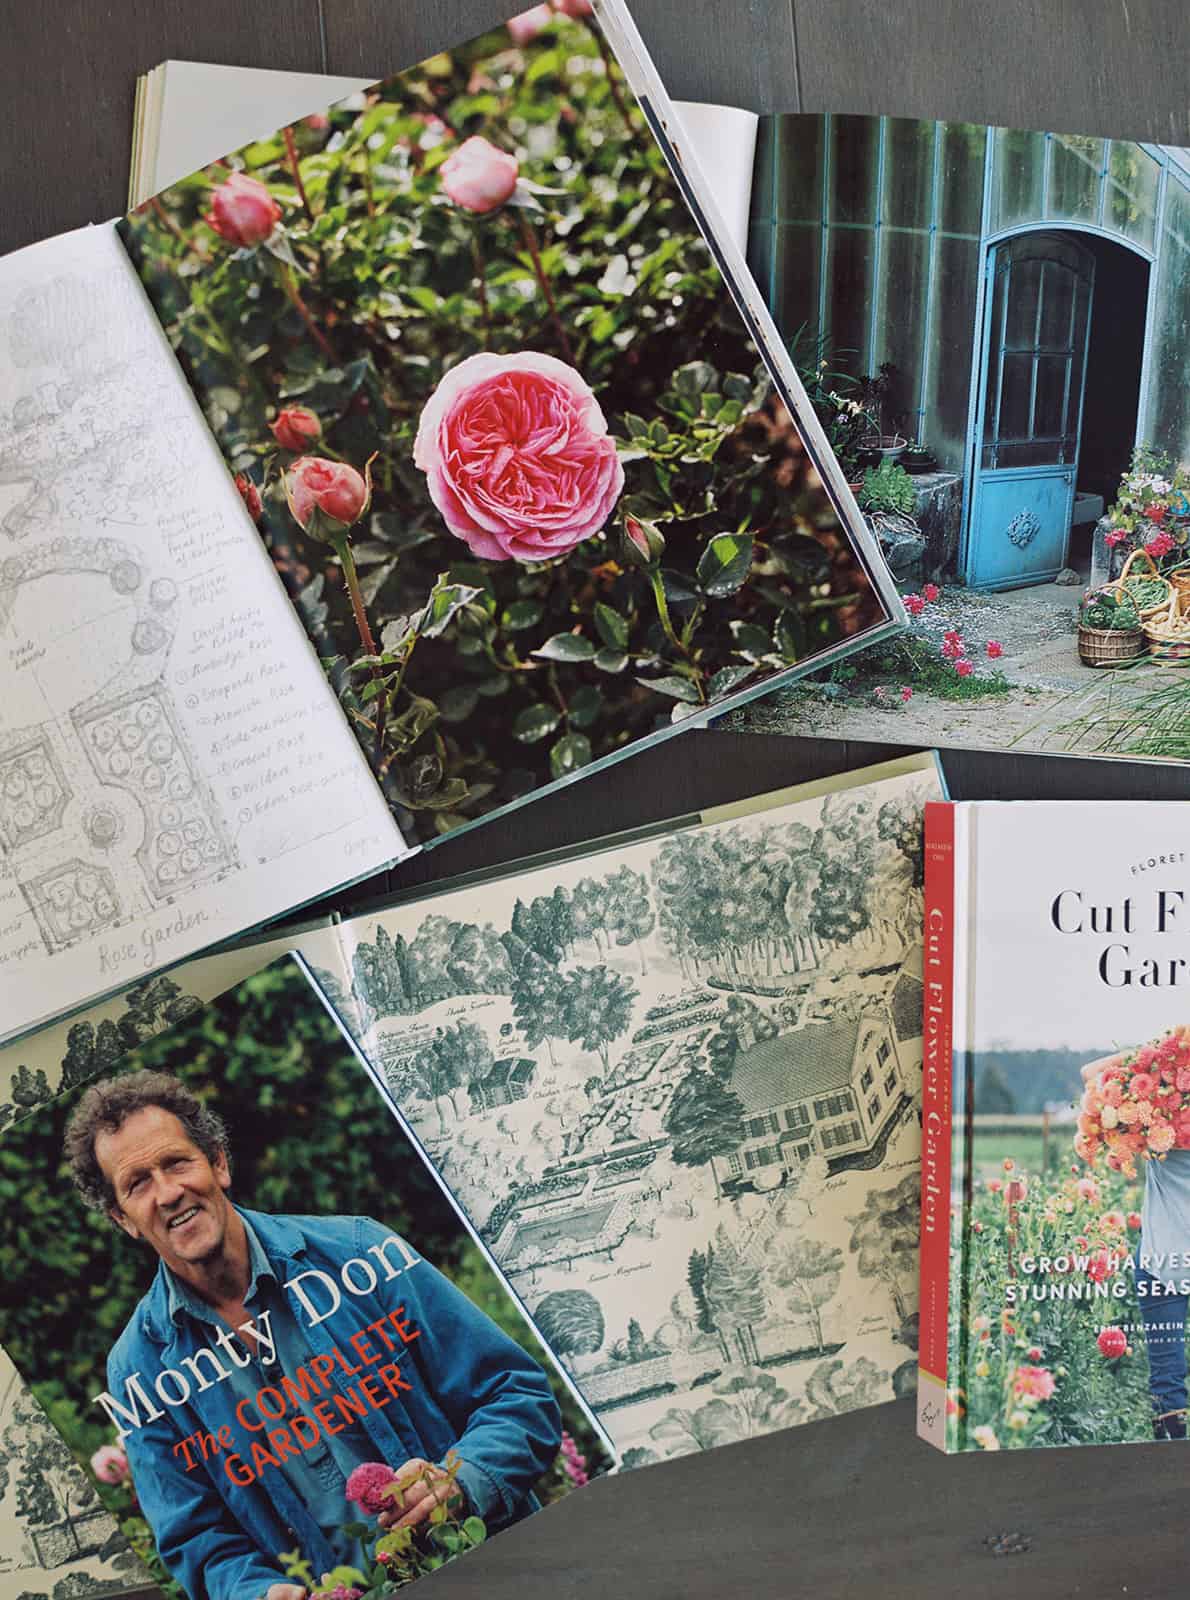 The Best Gardening Books for Beginner Gardeners